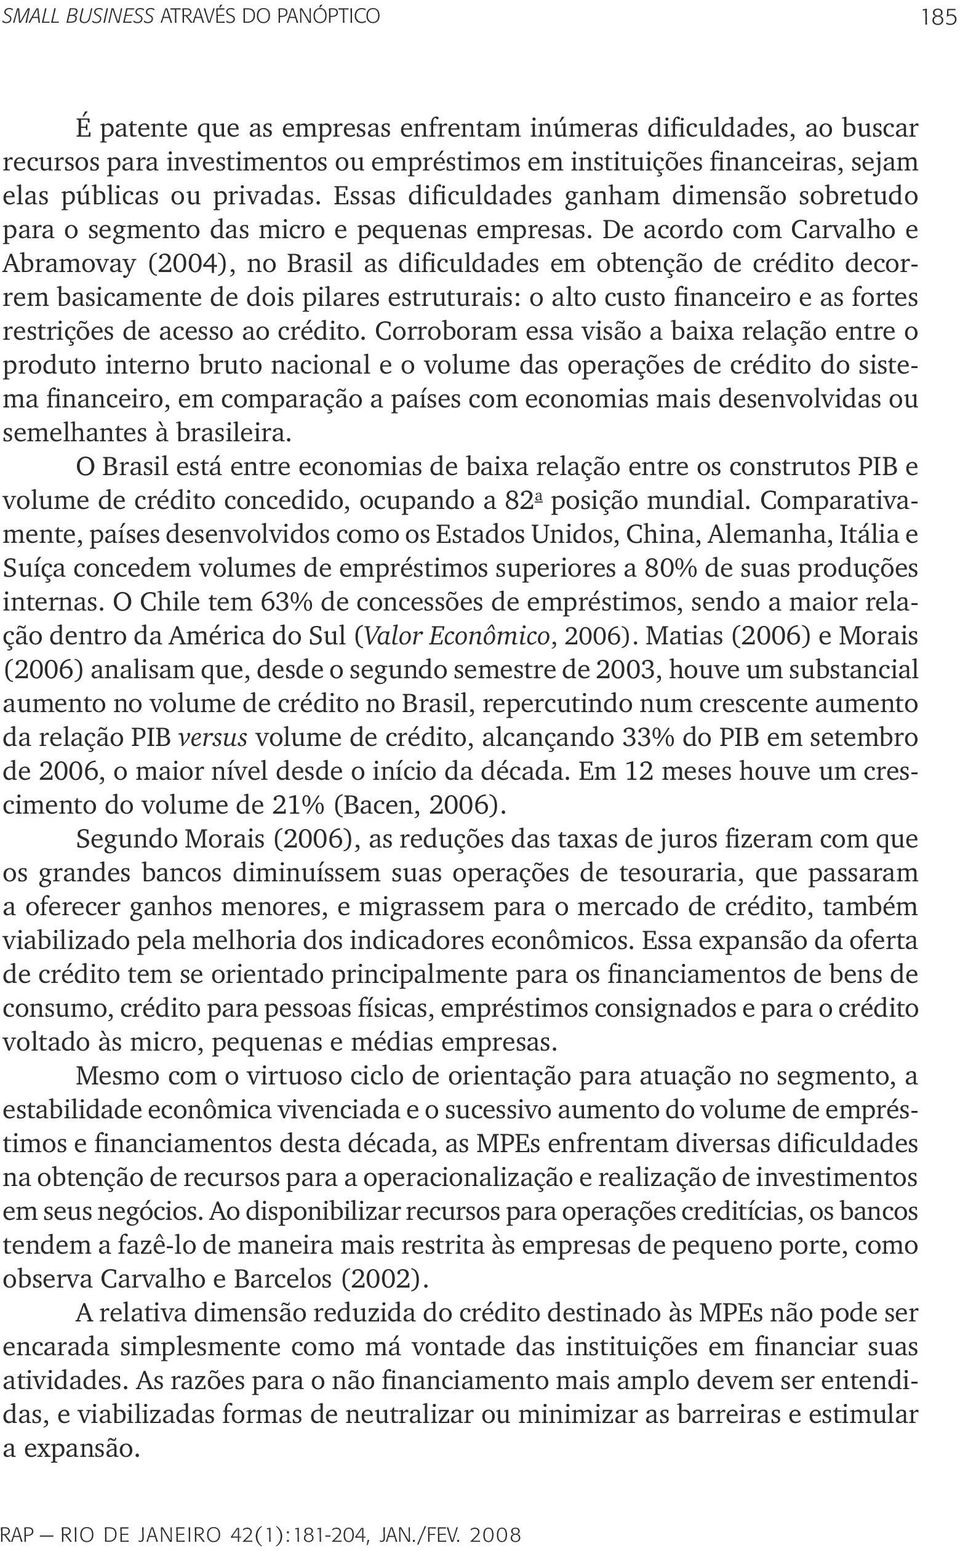 De acordo com Carvalho e Abramovay (2004), no Brasil as dificuldades em obtenção de crédito decorrem basicamente de dois pilares estruturais: o alto custo financeiro e as fortes restrições de acesso